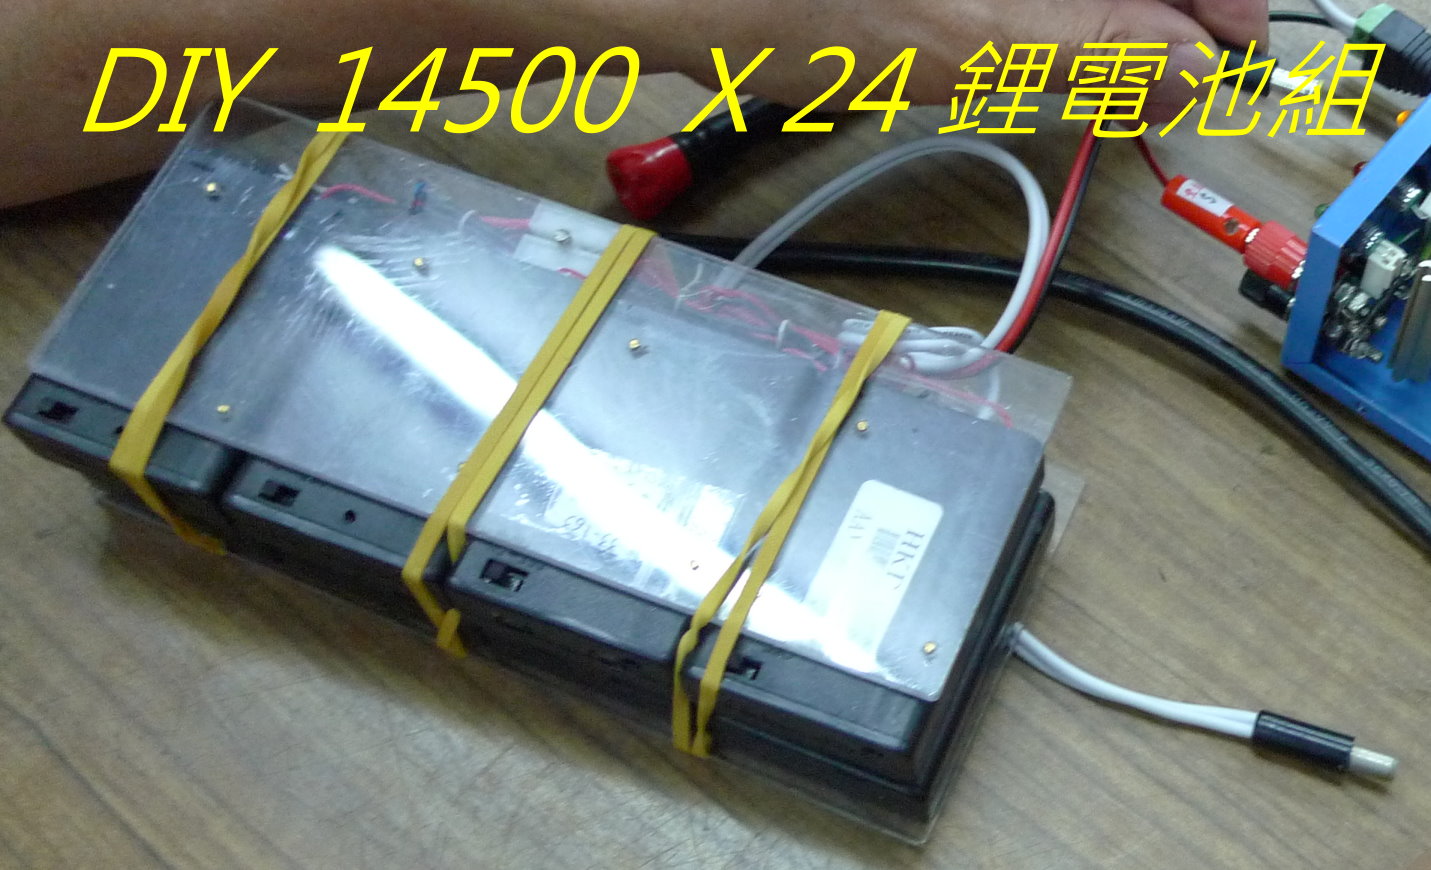 09 DIY  14500  X 24 鋰電池組- .jpg